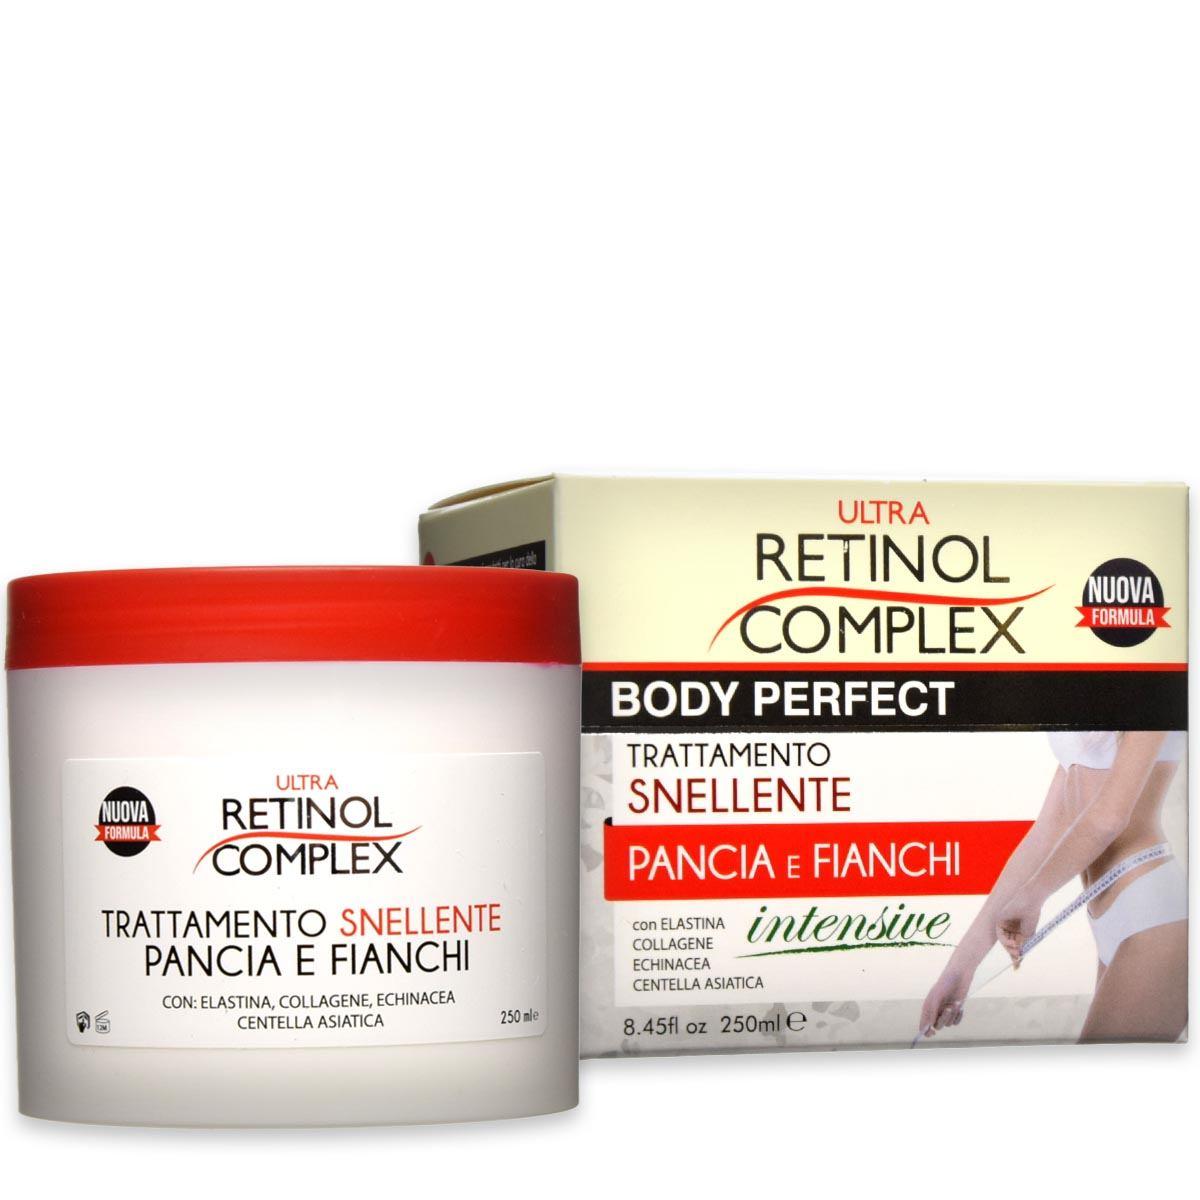 Retinol complex ultra trattamento snellente pancia & fianchi 250 ml